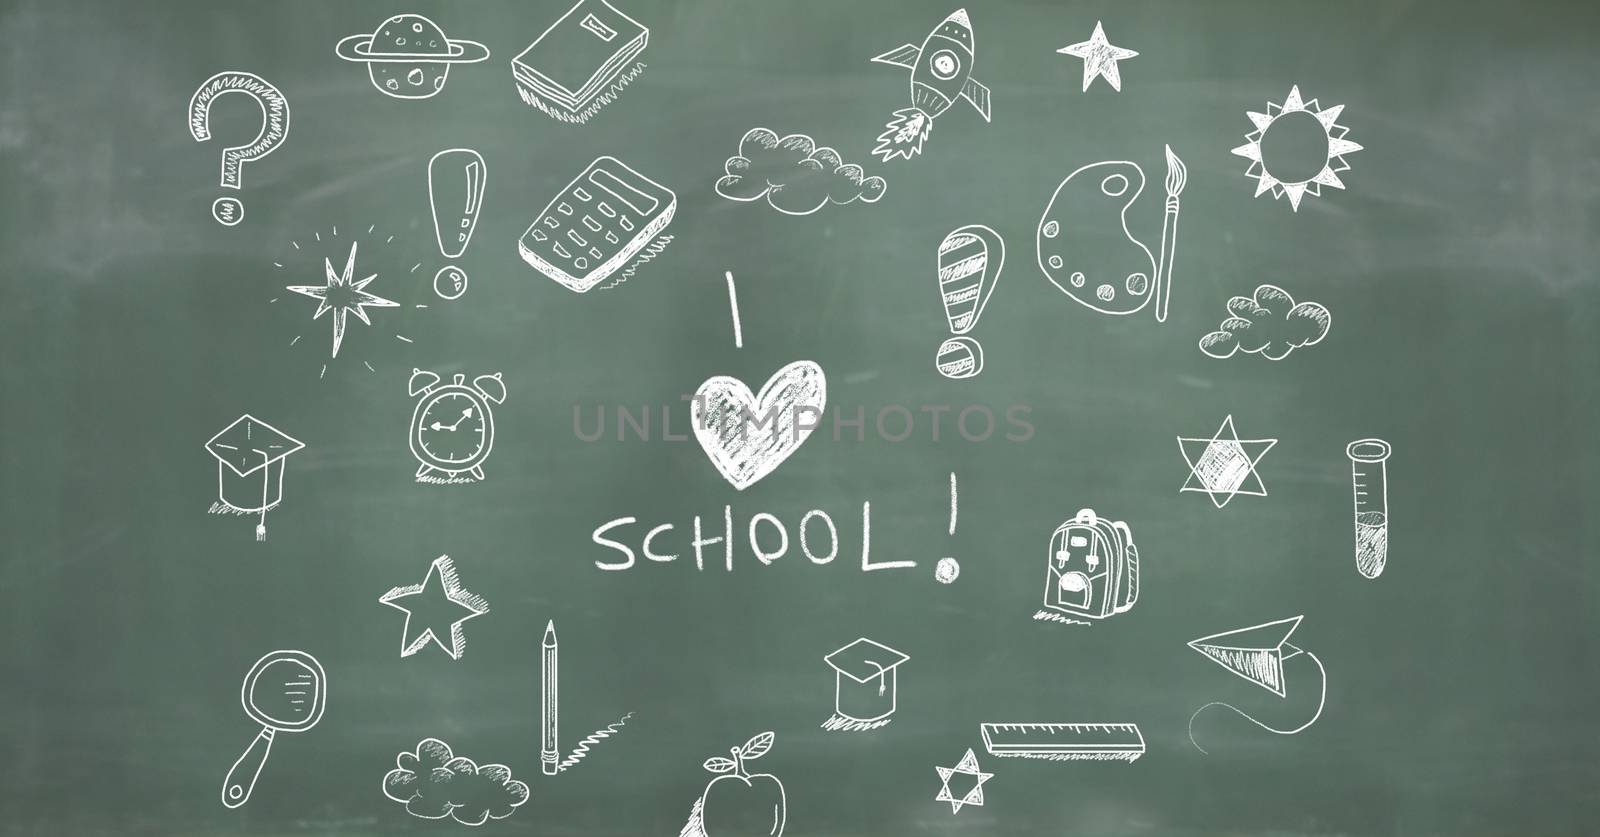 I love school Education drawing on blackboard by Wavebreakmedia